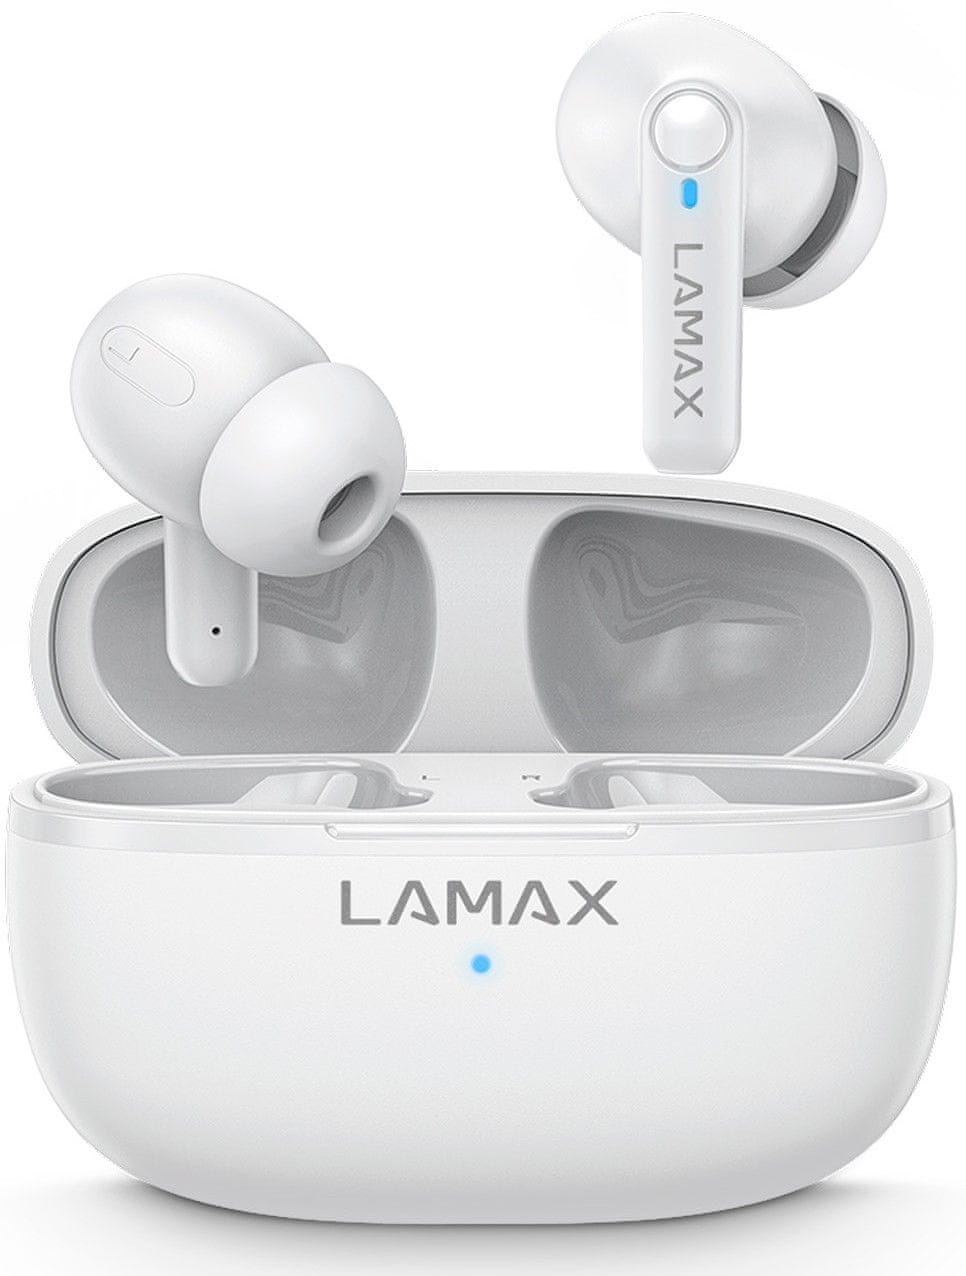  bezdrátová Bluetooth sluchátka lamax clips1 nezkreslený zvuk pohodlná konstrukce uzavřená hlasový asistent mikrofon pro handsfree dlouhá výdrž na nabití zabudované ovládání 